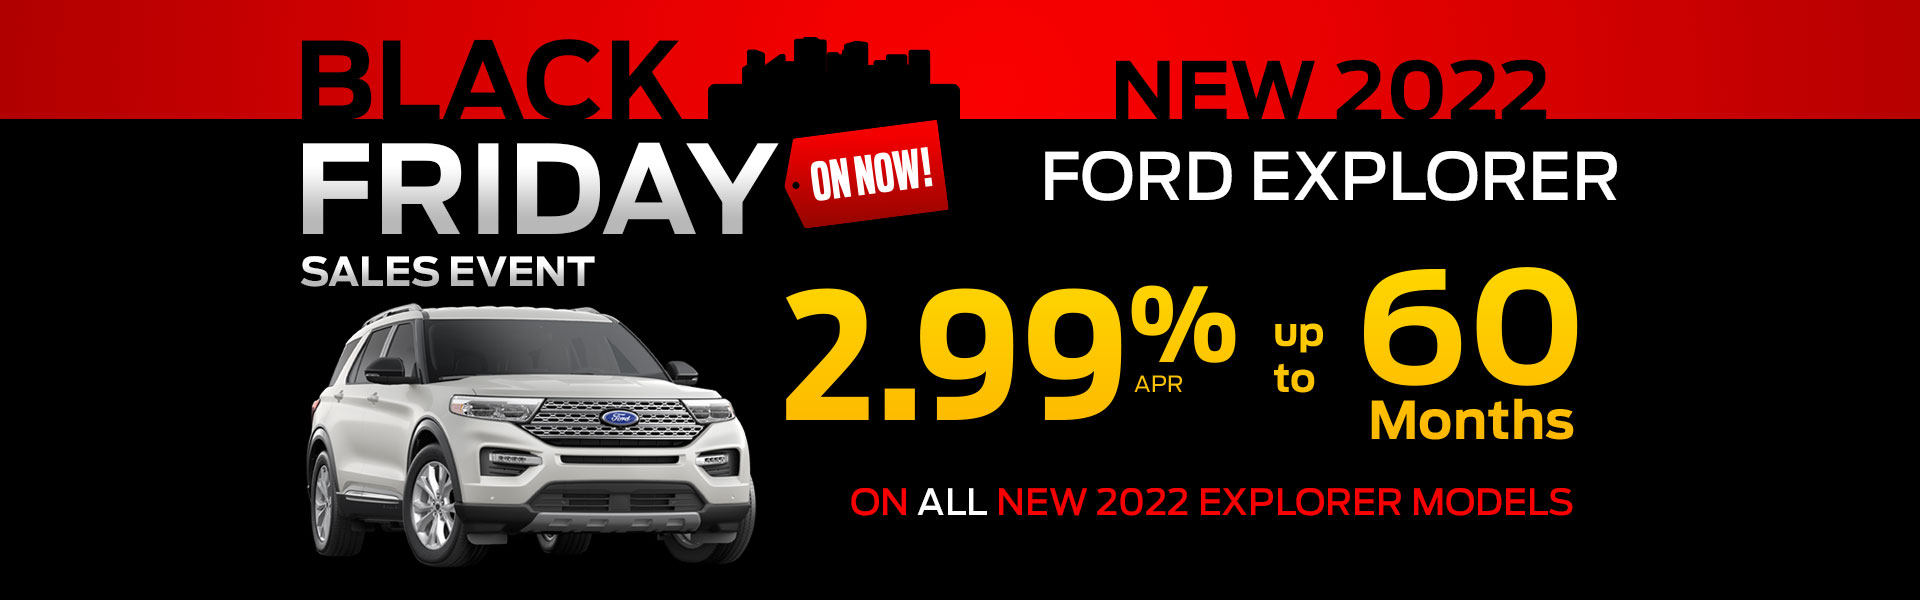 2022 Ford Explorer Black Friday Sales Event